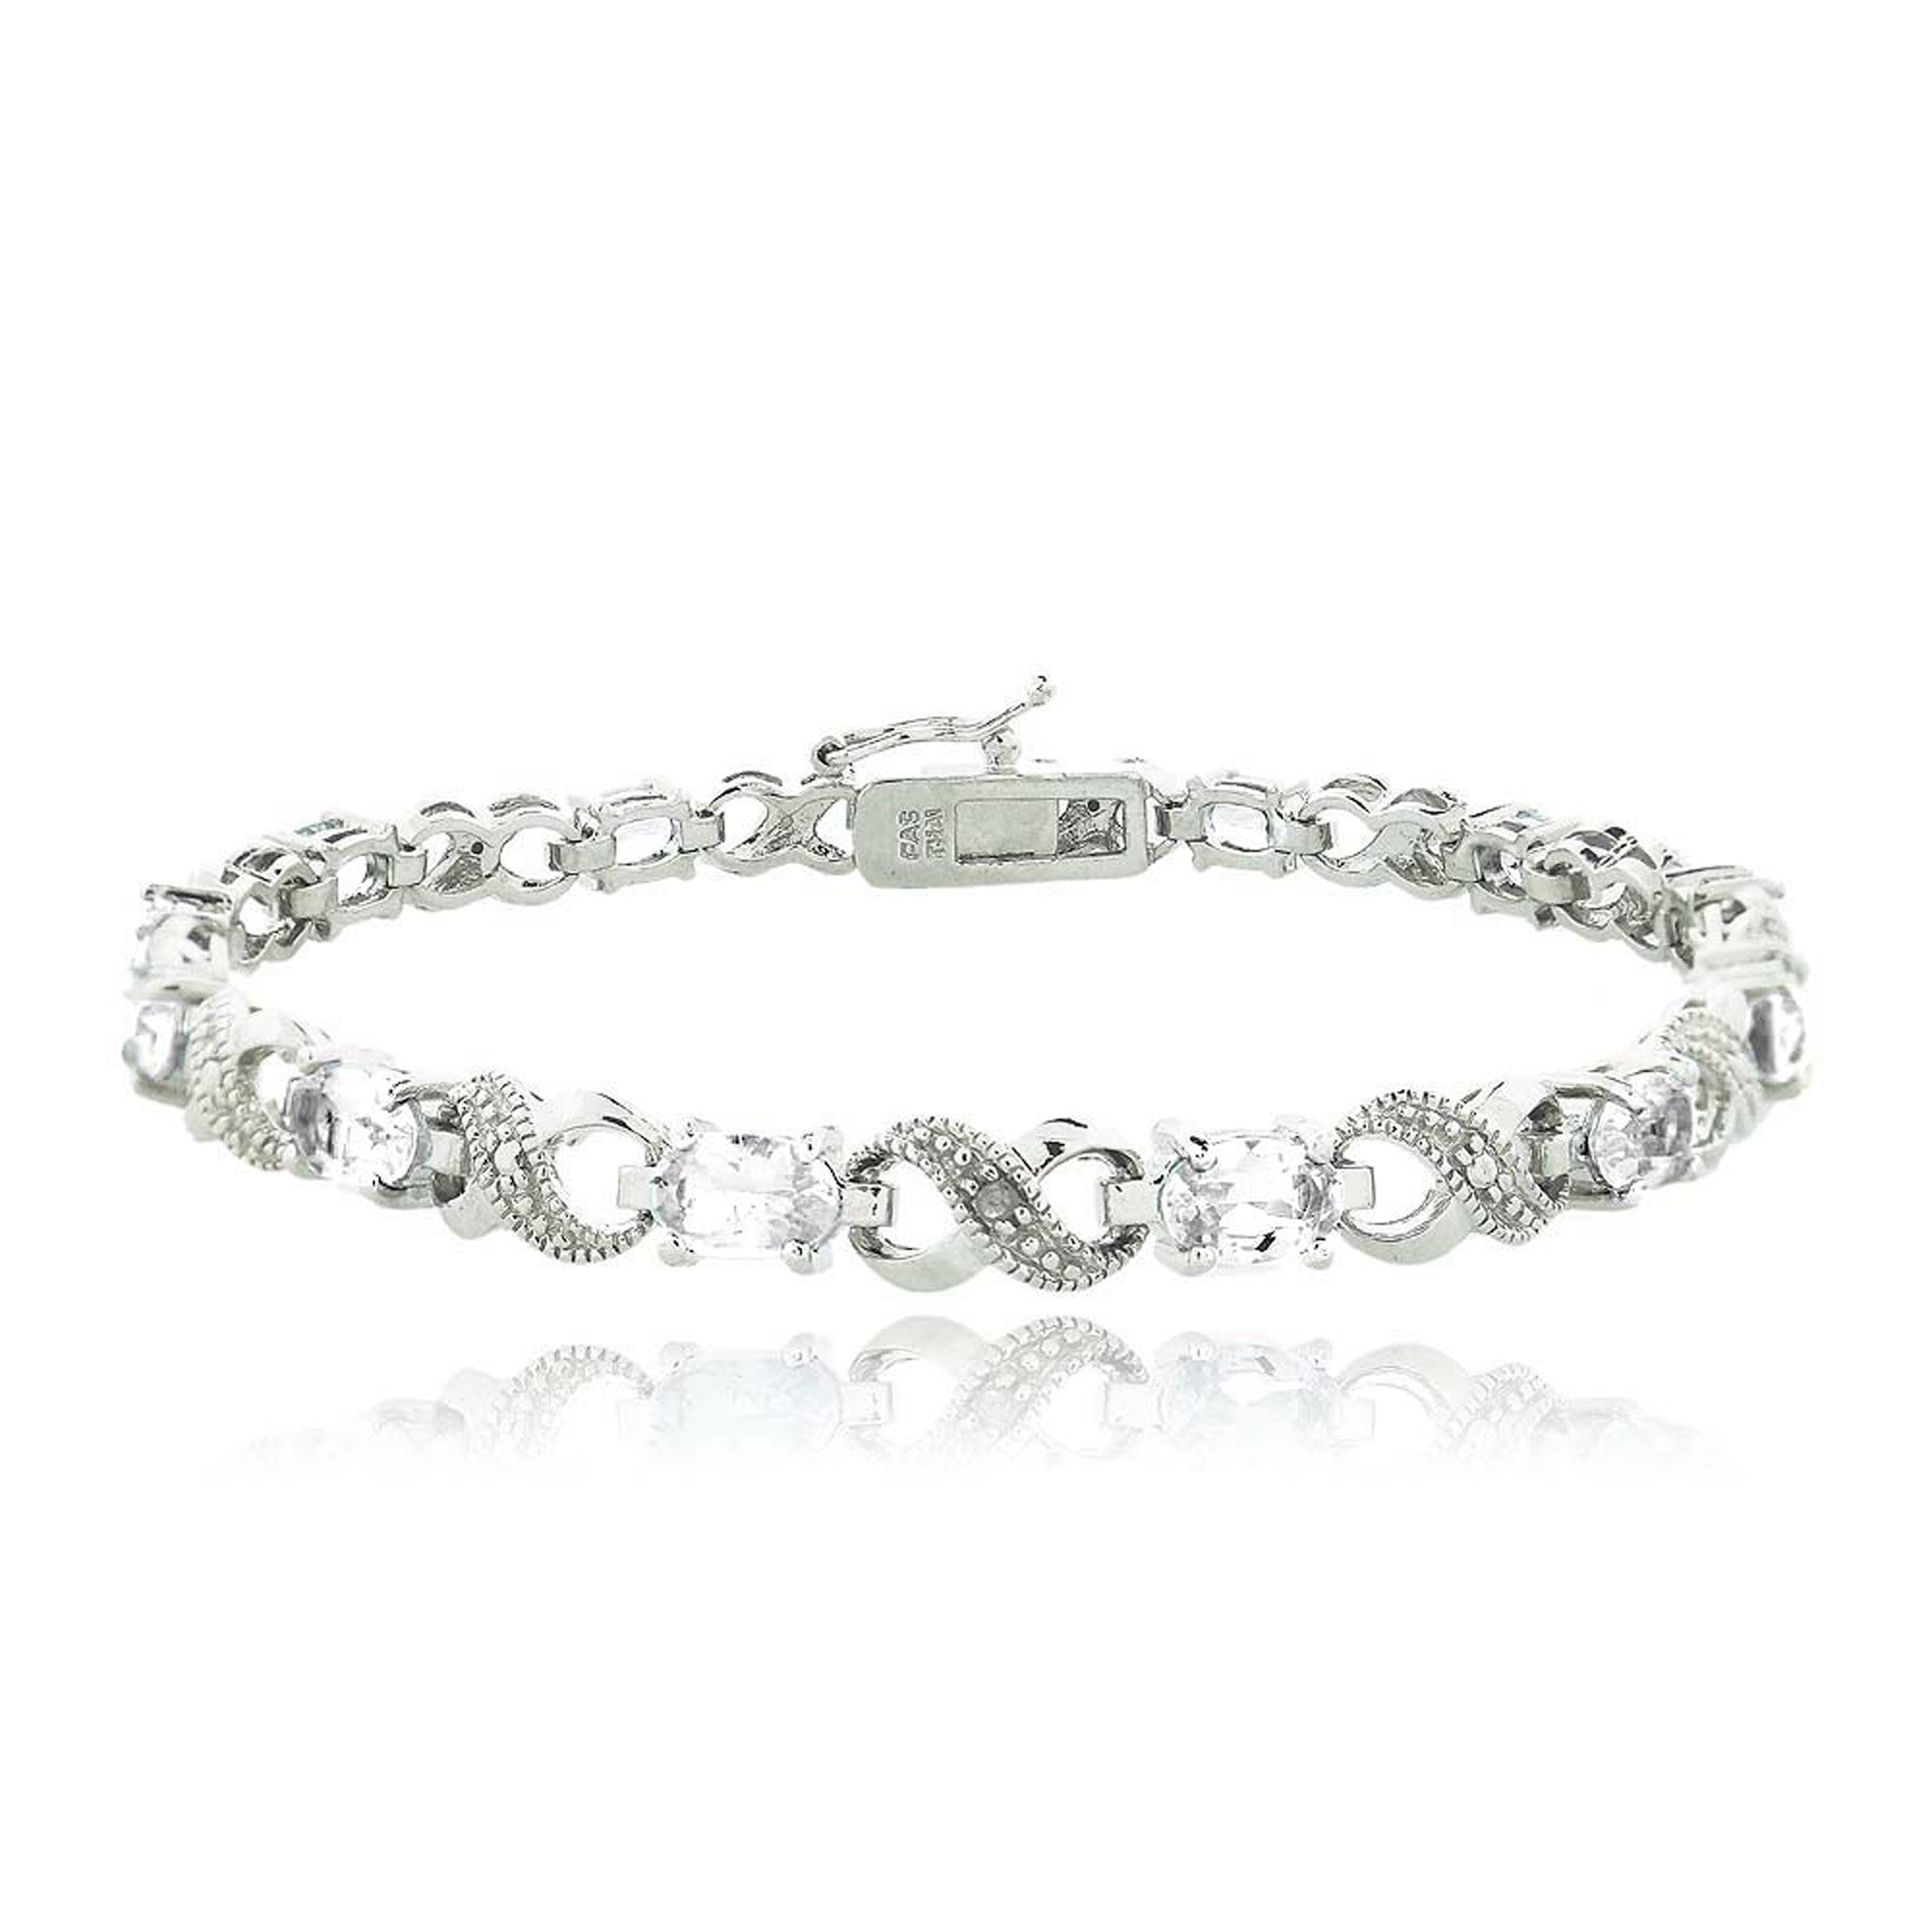 Infinity Link Bracelet With Diamond & Gem Accents - White Topaz